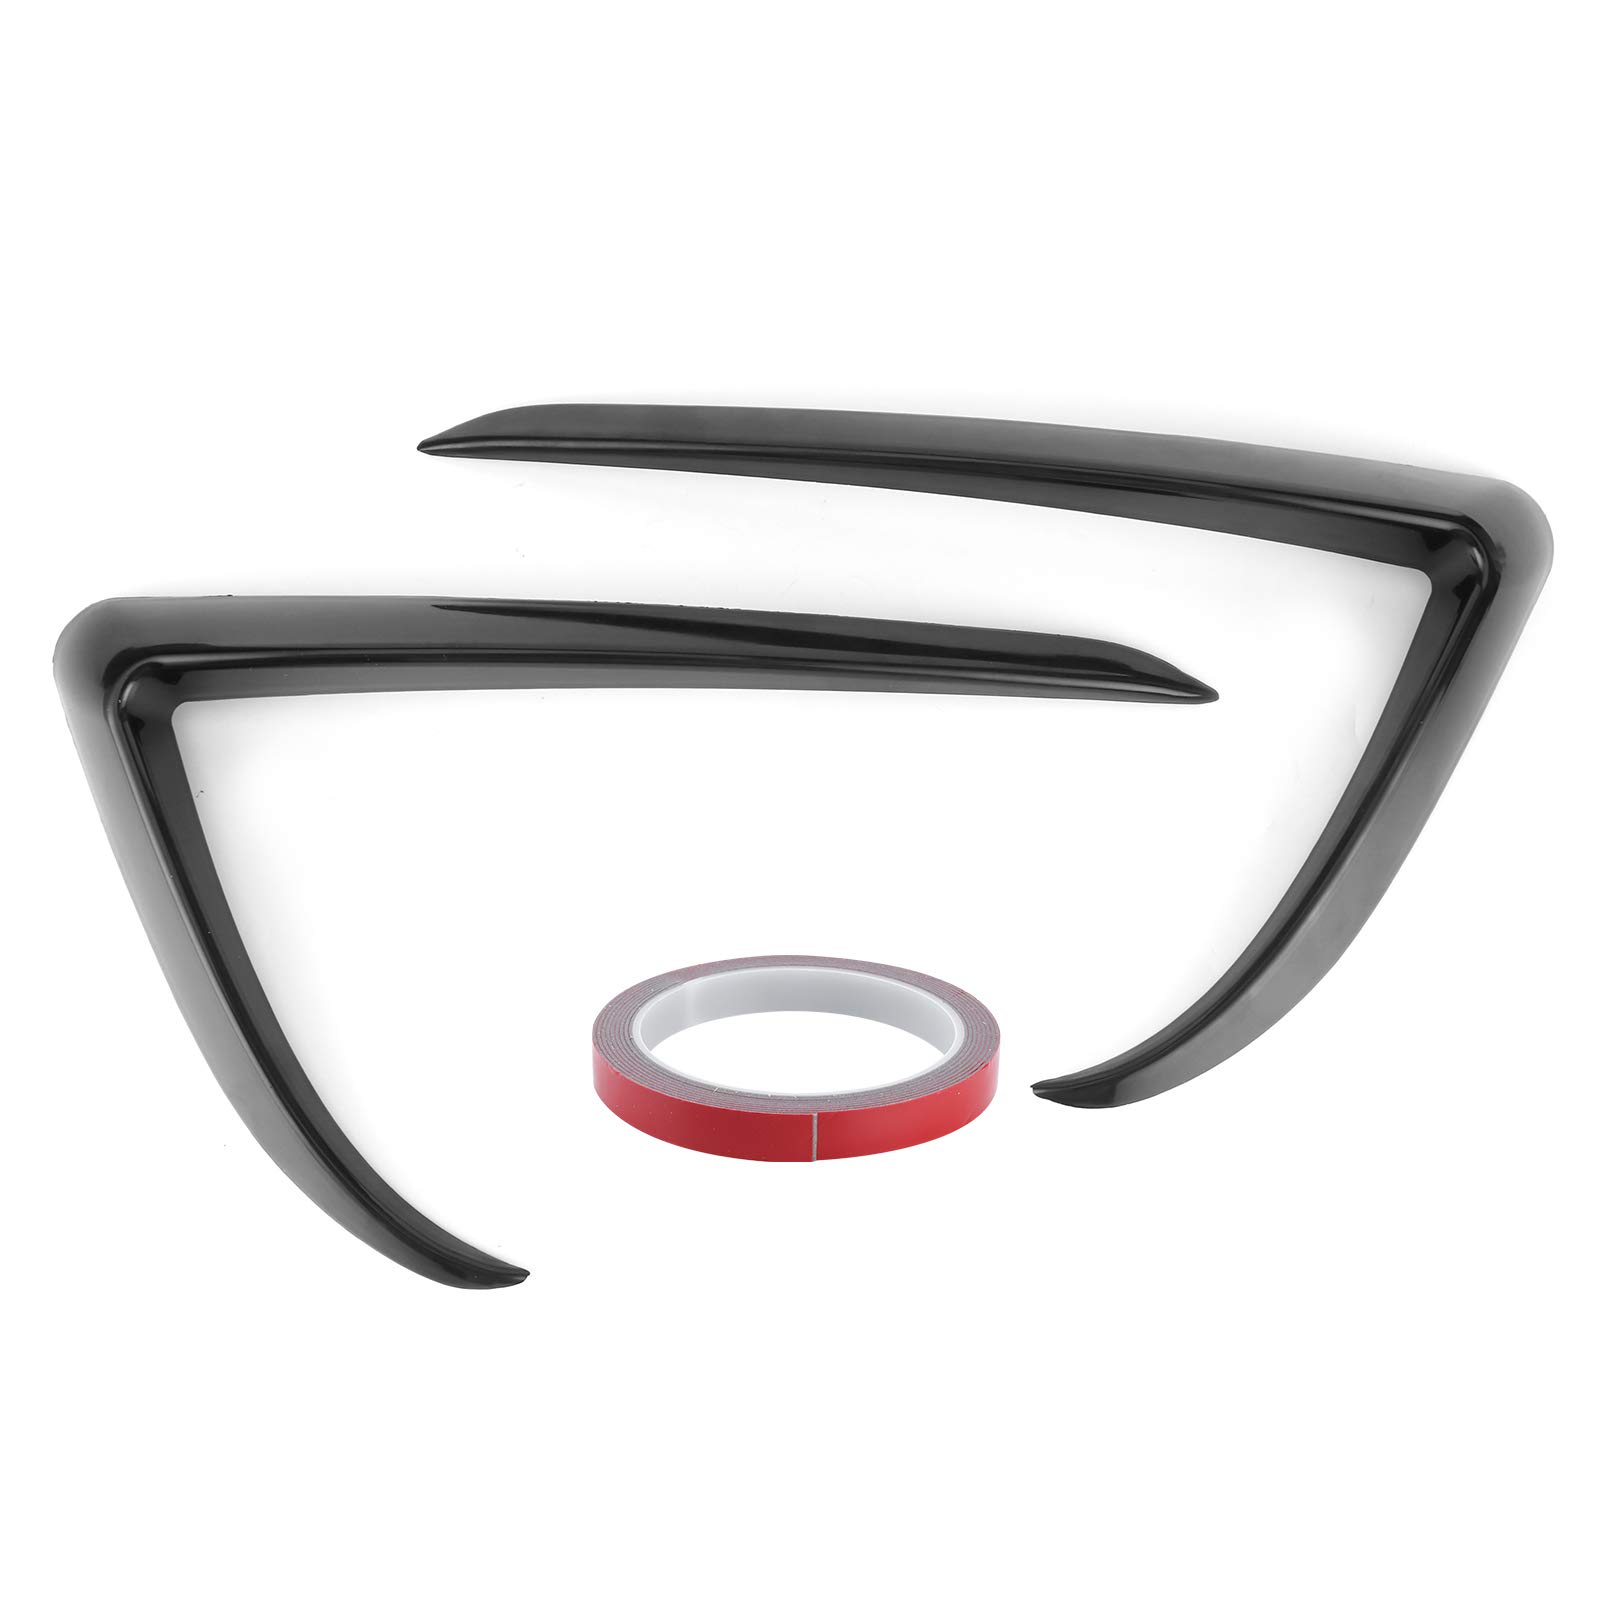 Vordere Nebelscheinwerfer-Augenbraue, Auto-Nebelscheinwerfer-Augenbrauen-Augenliderabdeckung Verkleidung Autozubehör Passend für Tesla Model 3[Schwarz] von aqxreight